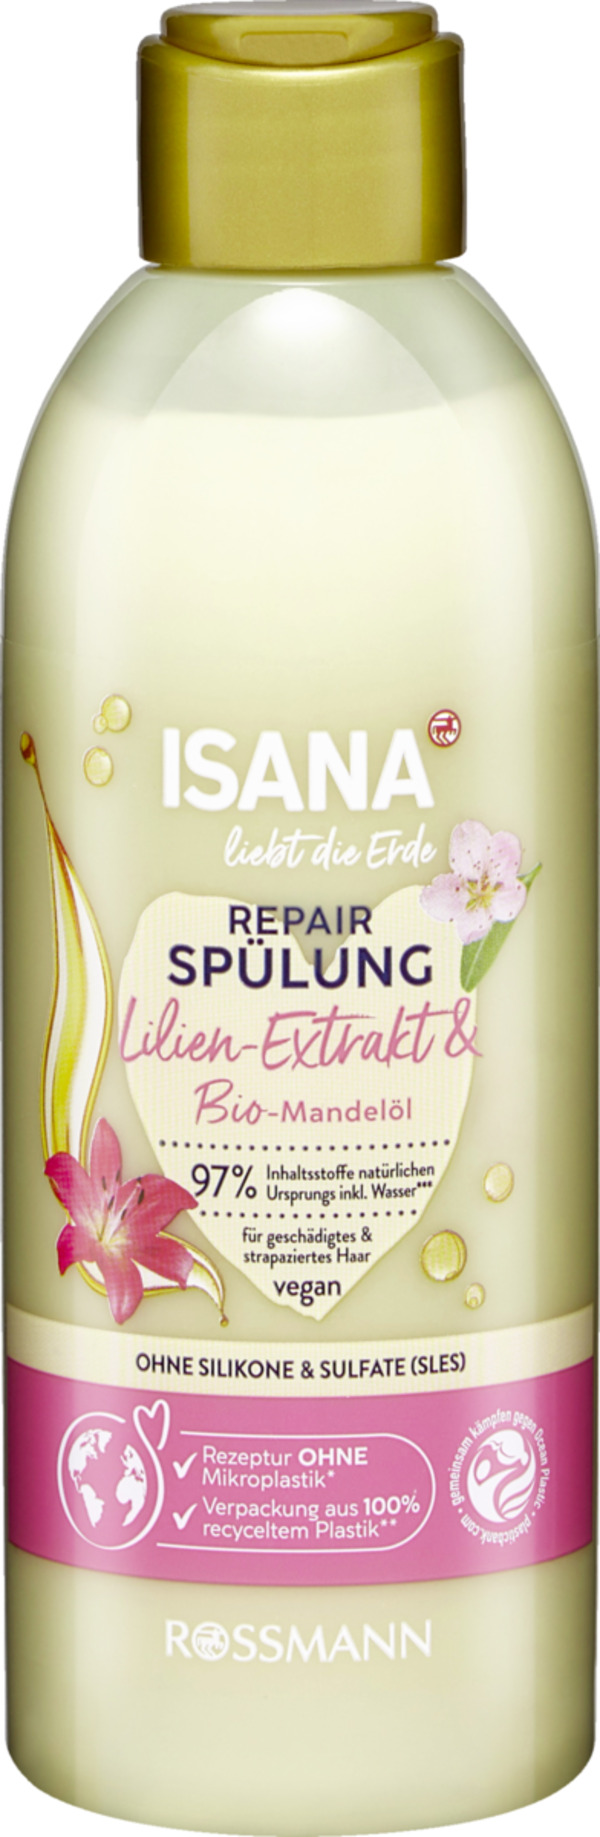 Bild 1 von ISANA Repair Spülung Lilien-Extrakt & Bio-Mandelöl